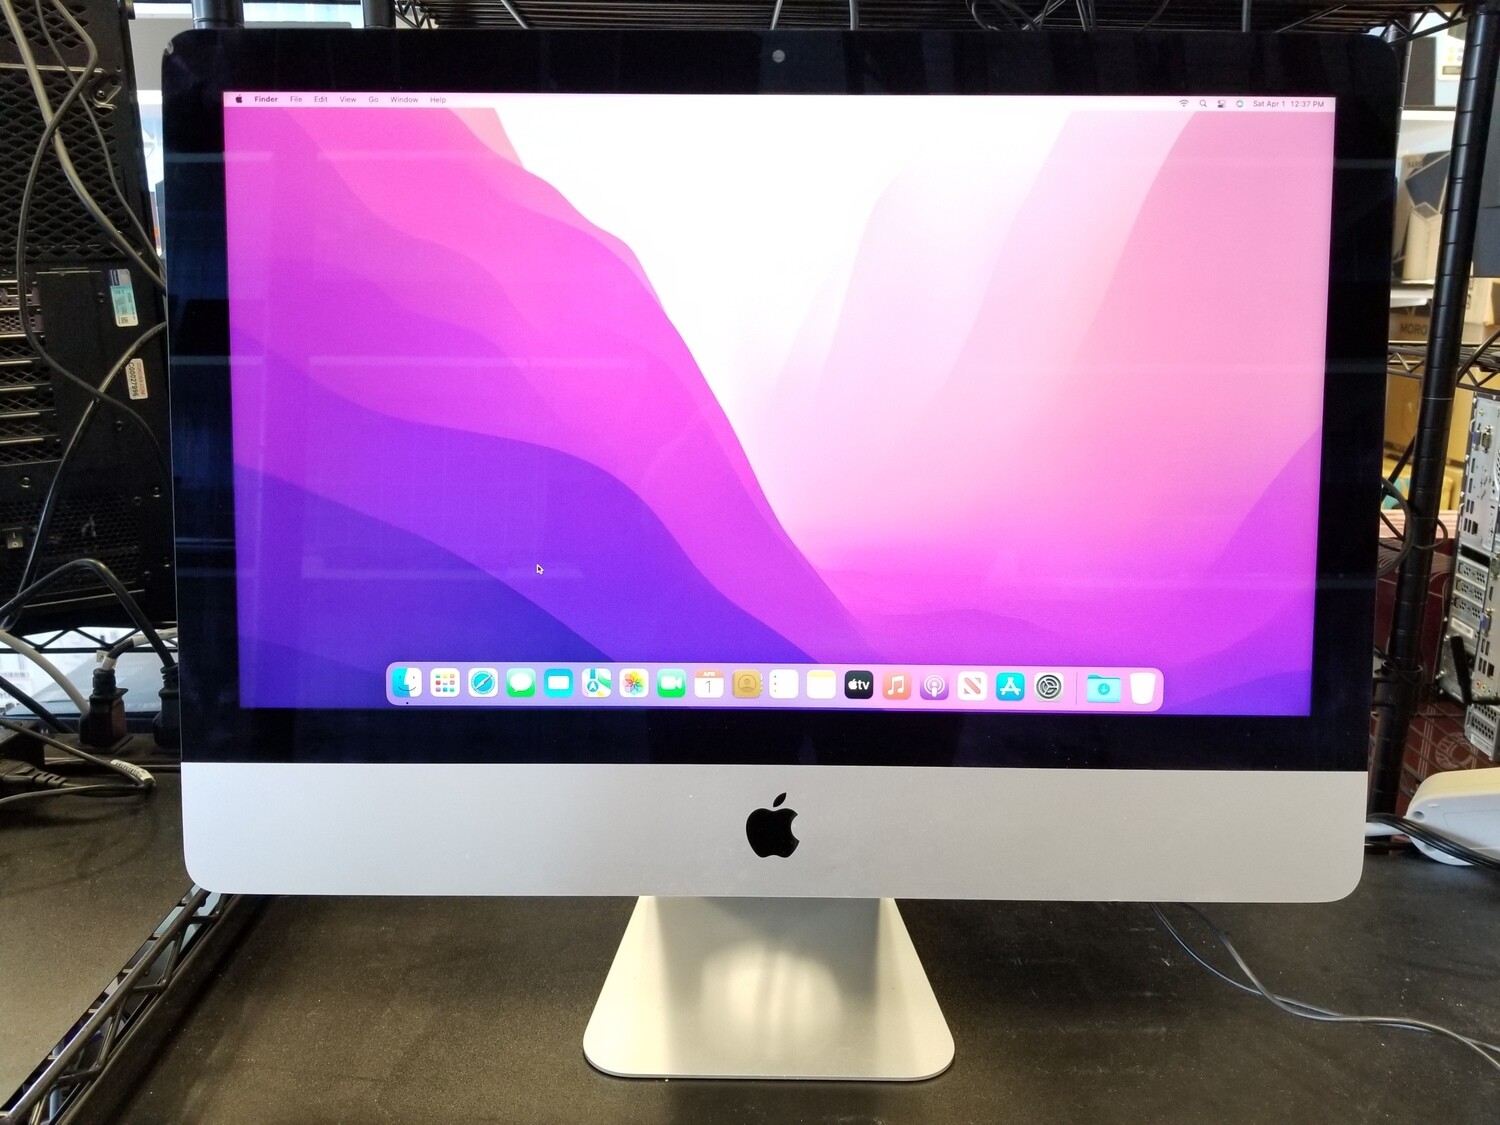 Apple iMac 21.5" 2015 Quad-Core Intel Core i5@2.8GHz 8GB RAM 1TB HDD,  1920x1080,